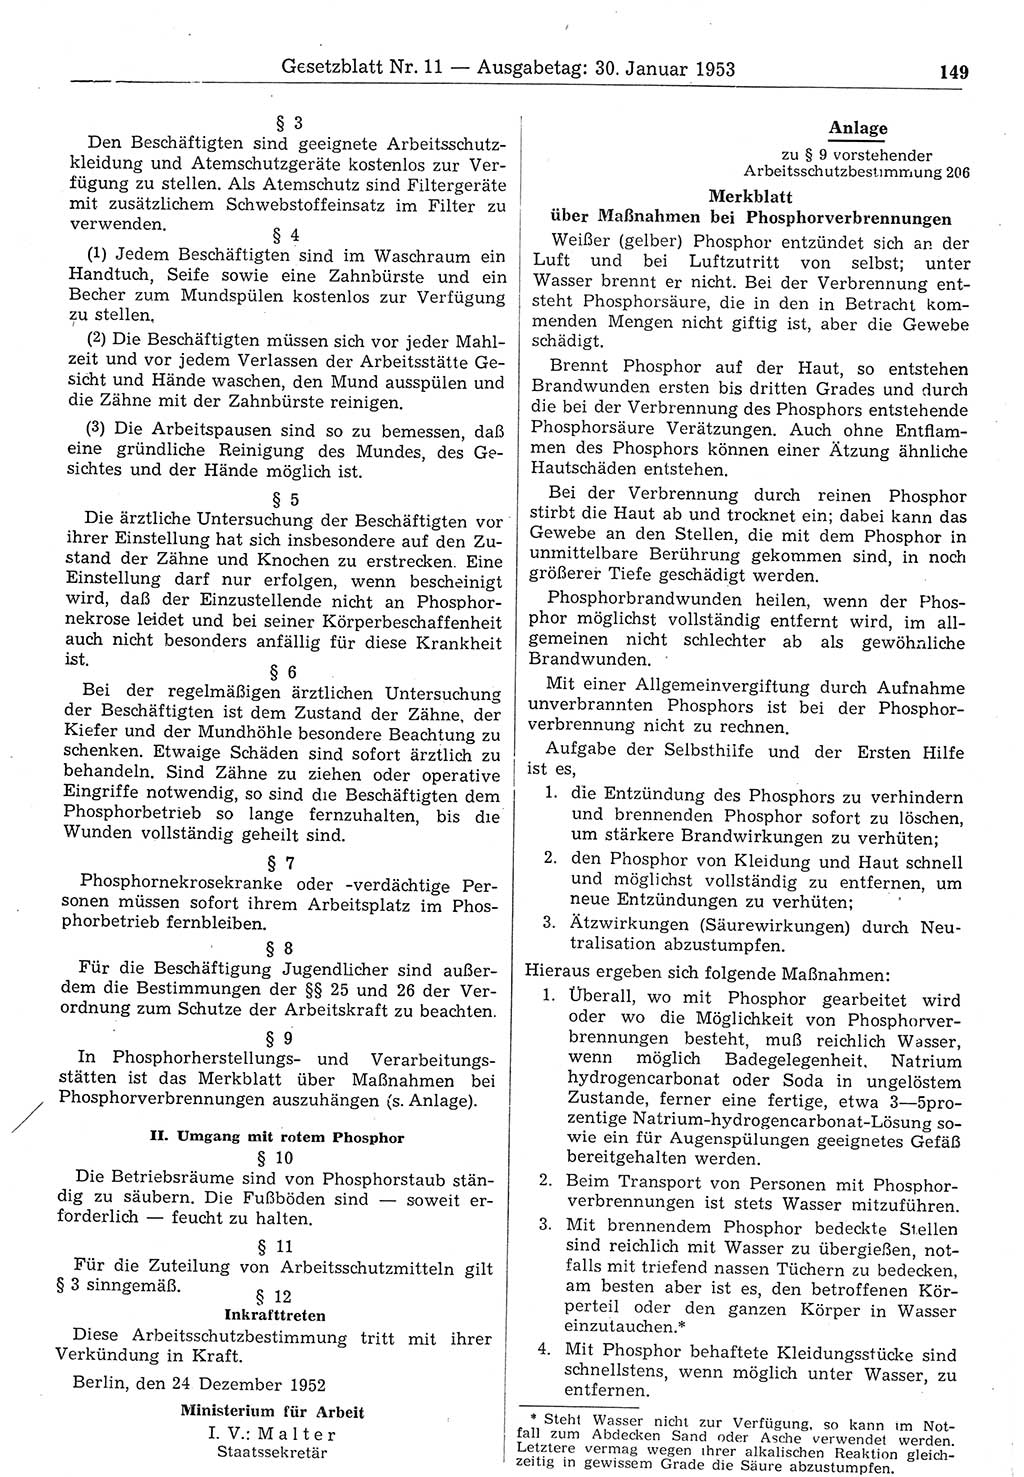 Gesetzblatt (GBl.) der Deutschen Demokratischen Republik (DDR) 1953, Seite 149 (GBl. DDR 1953, S. 149)